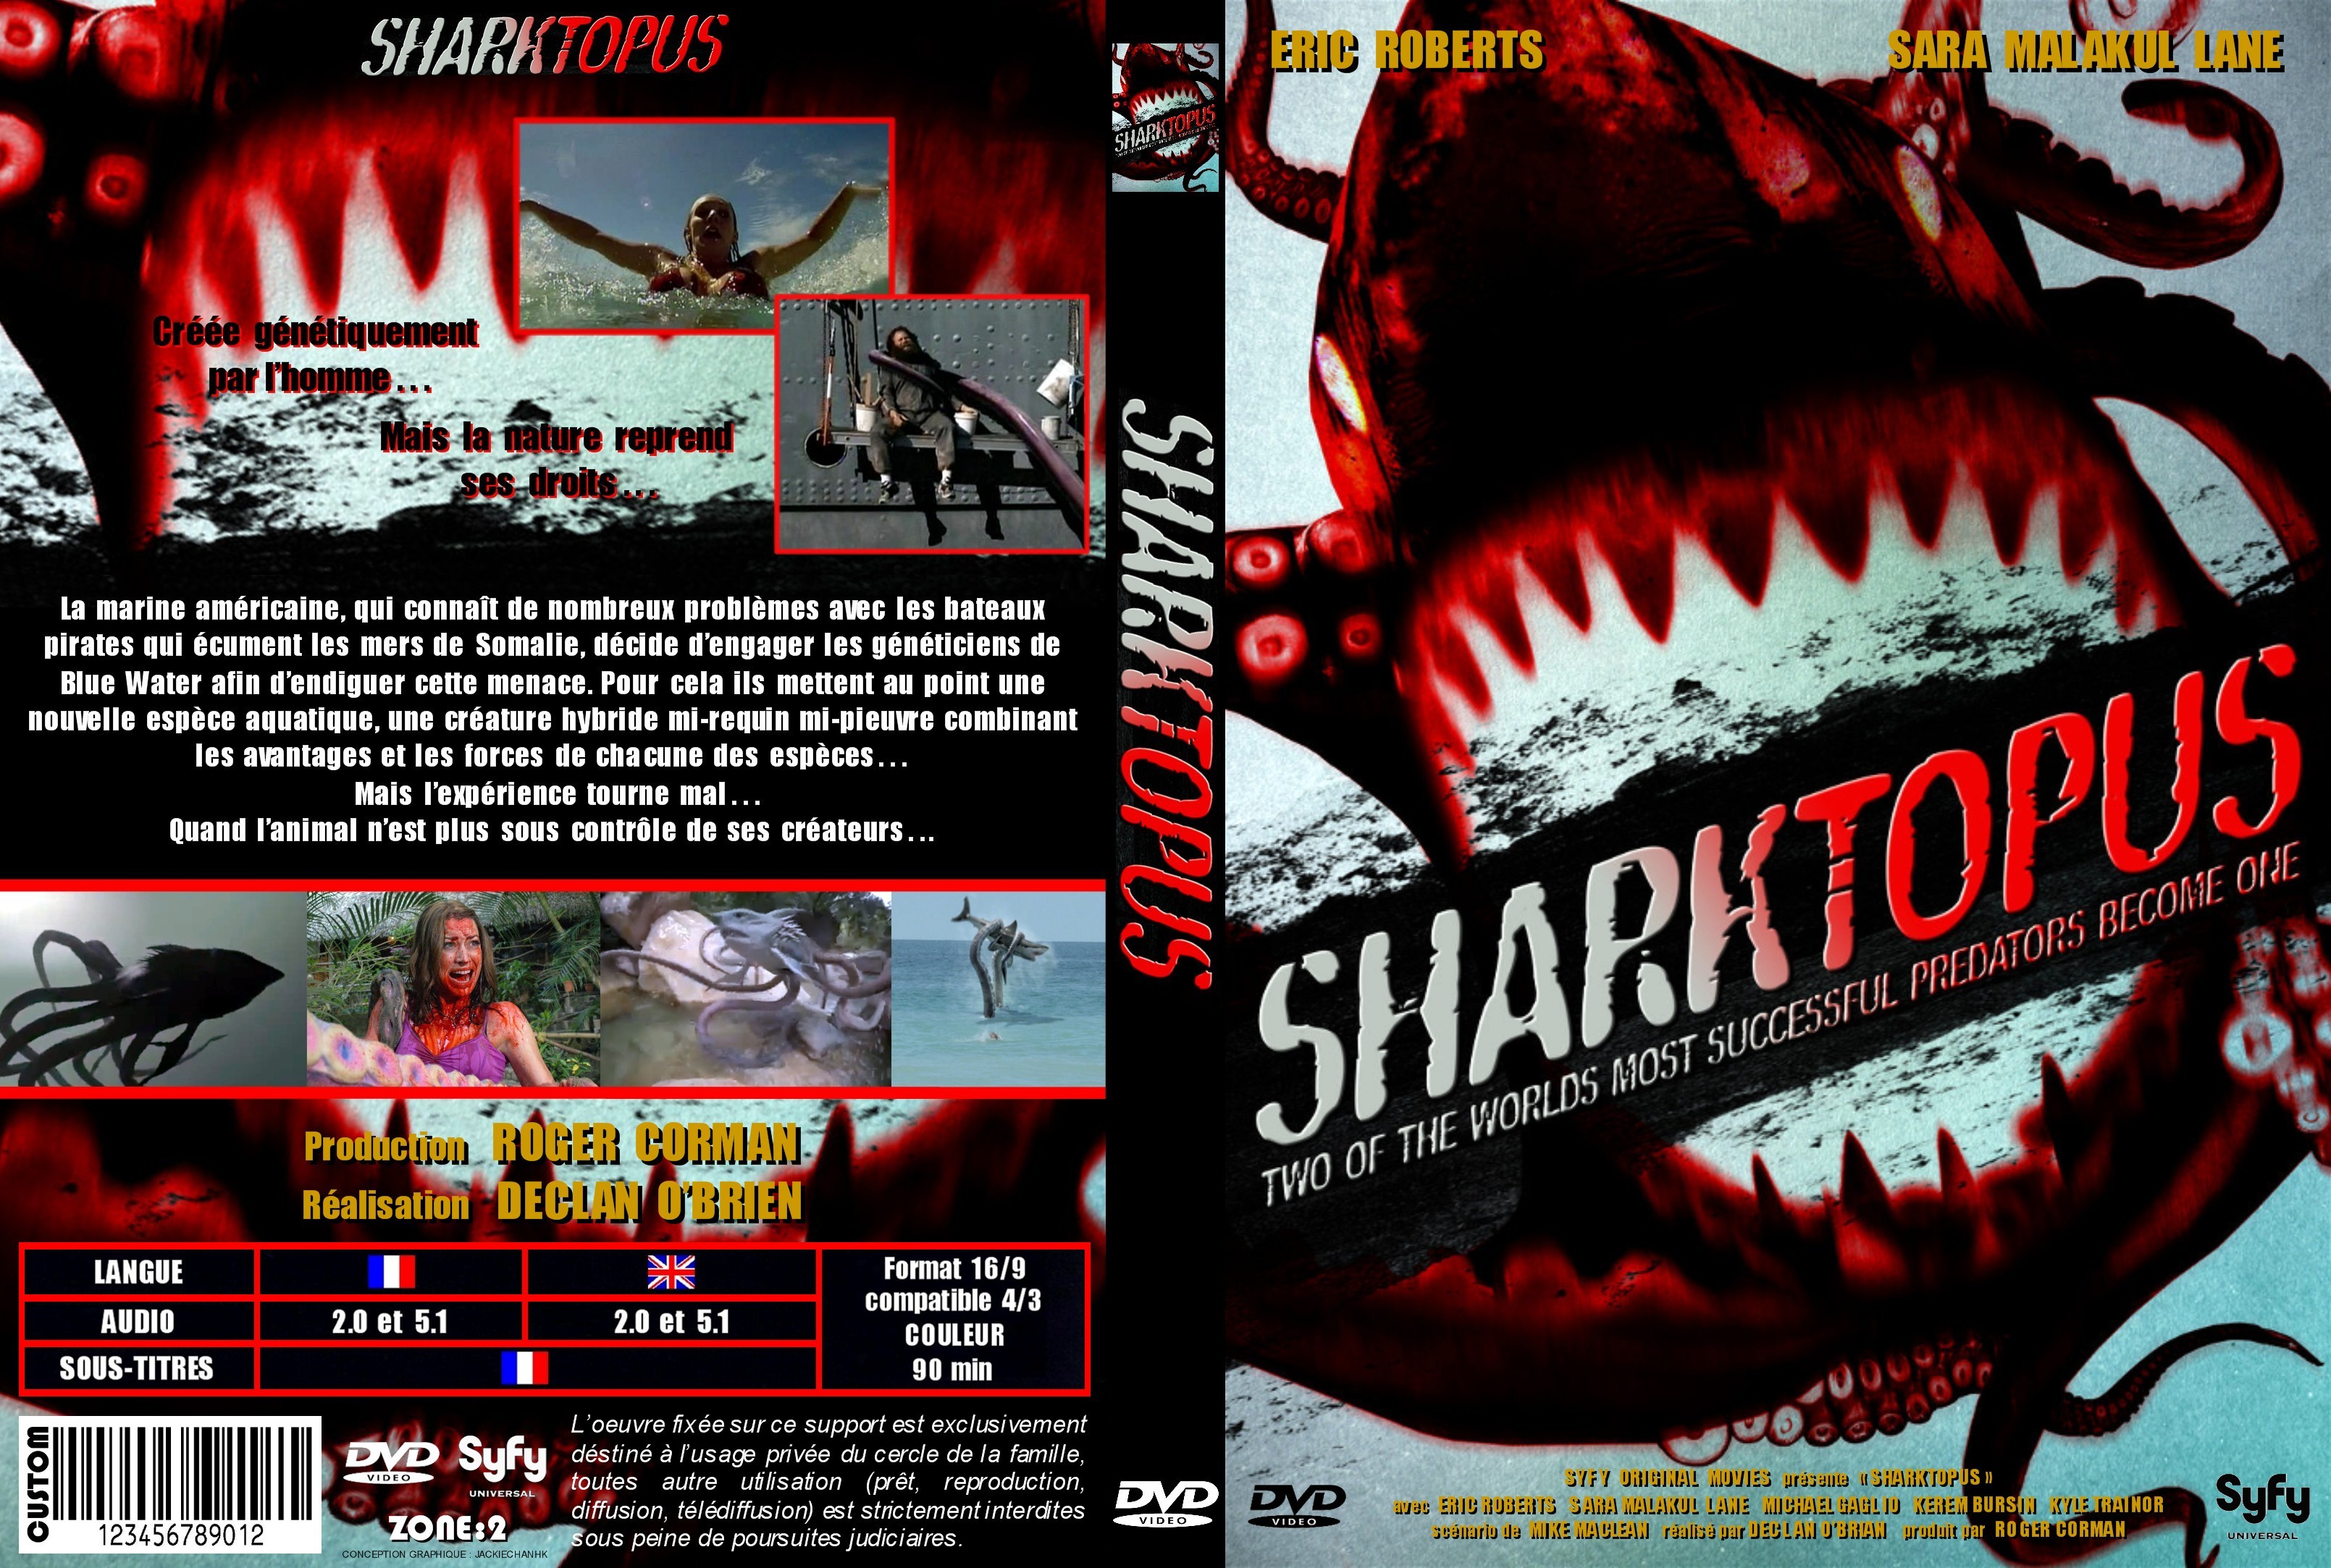 Jaquette DVD Sharktopus custom